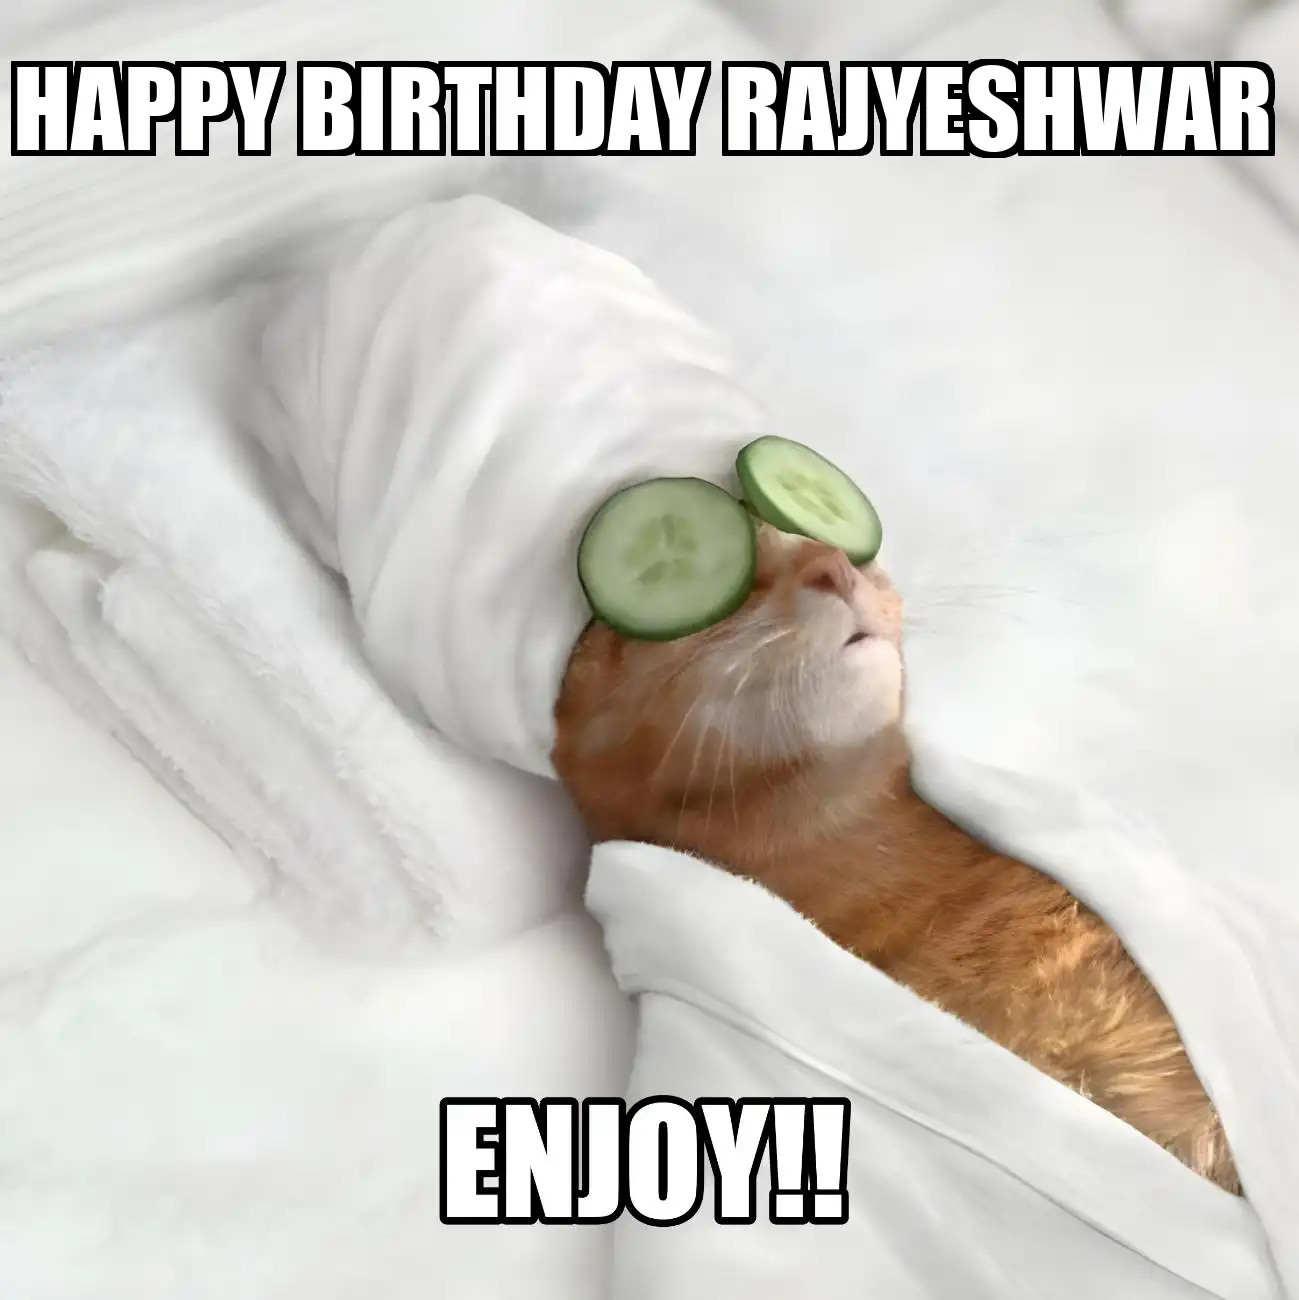 Happy Birthday Rajyeshwar Enjoy Cat Meme